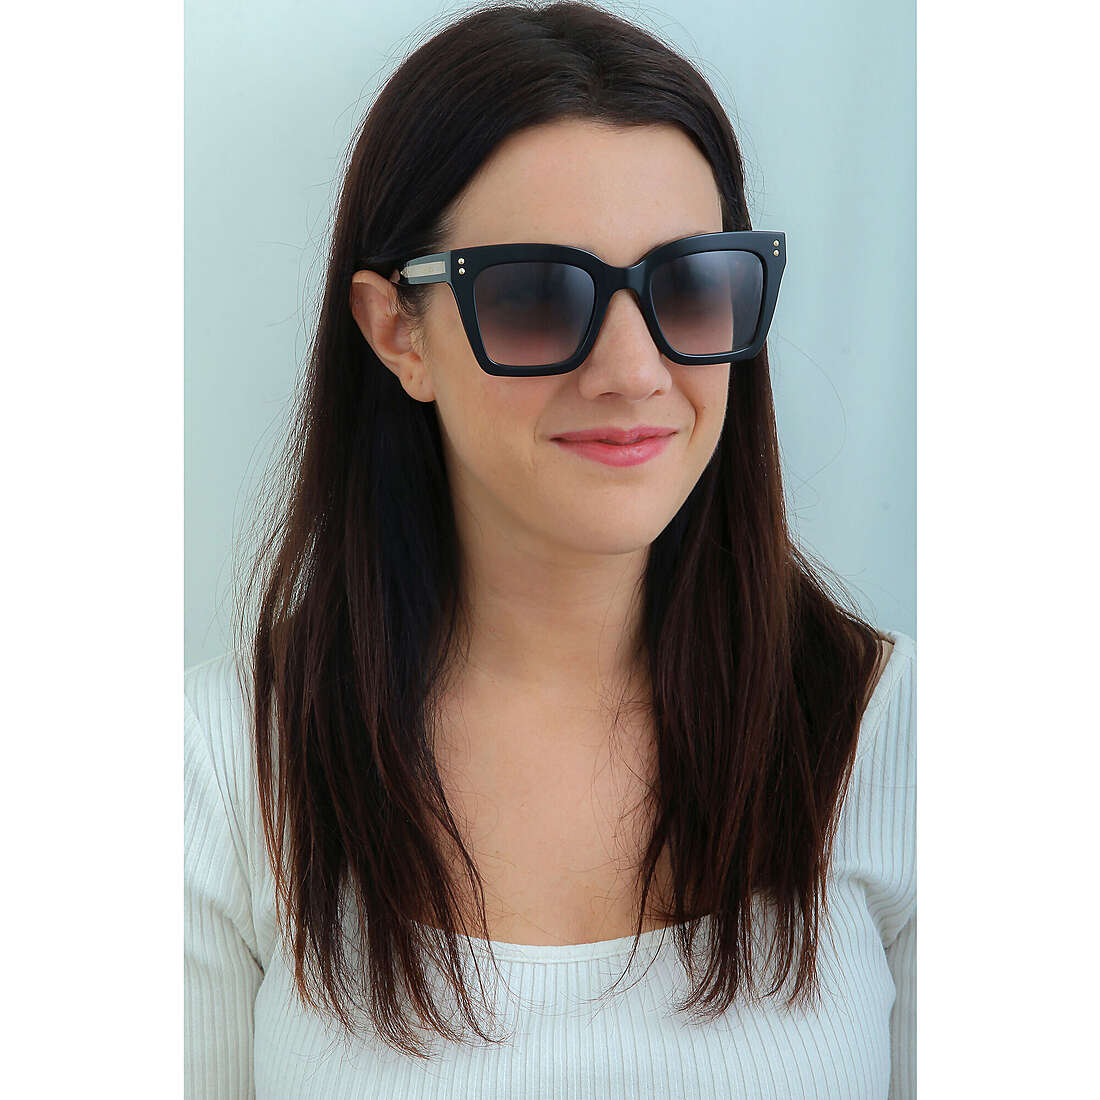 Twinset occhiali da sole donna STW019V0700 indosso